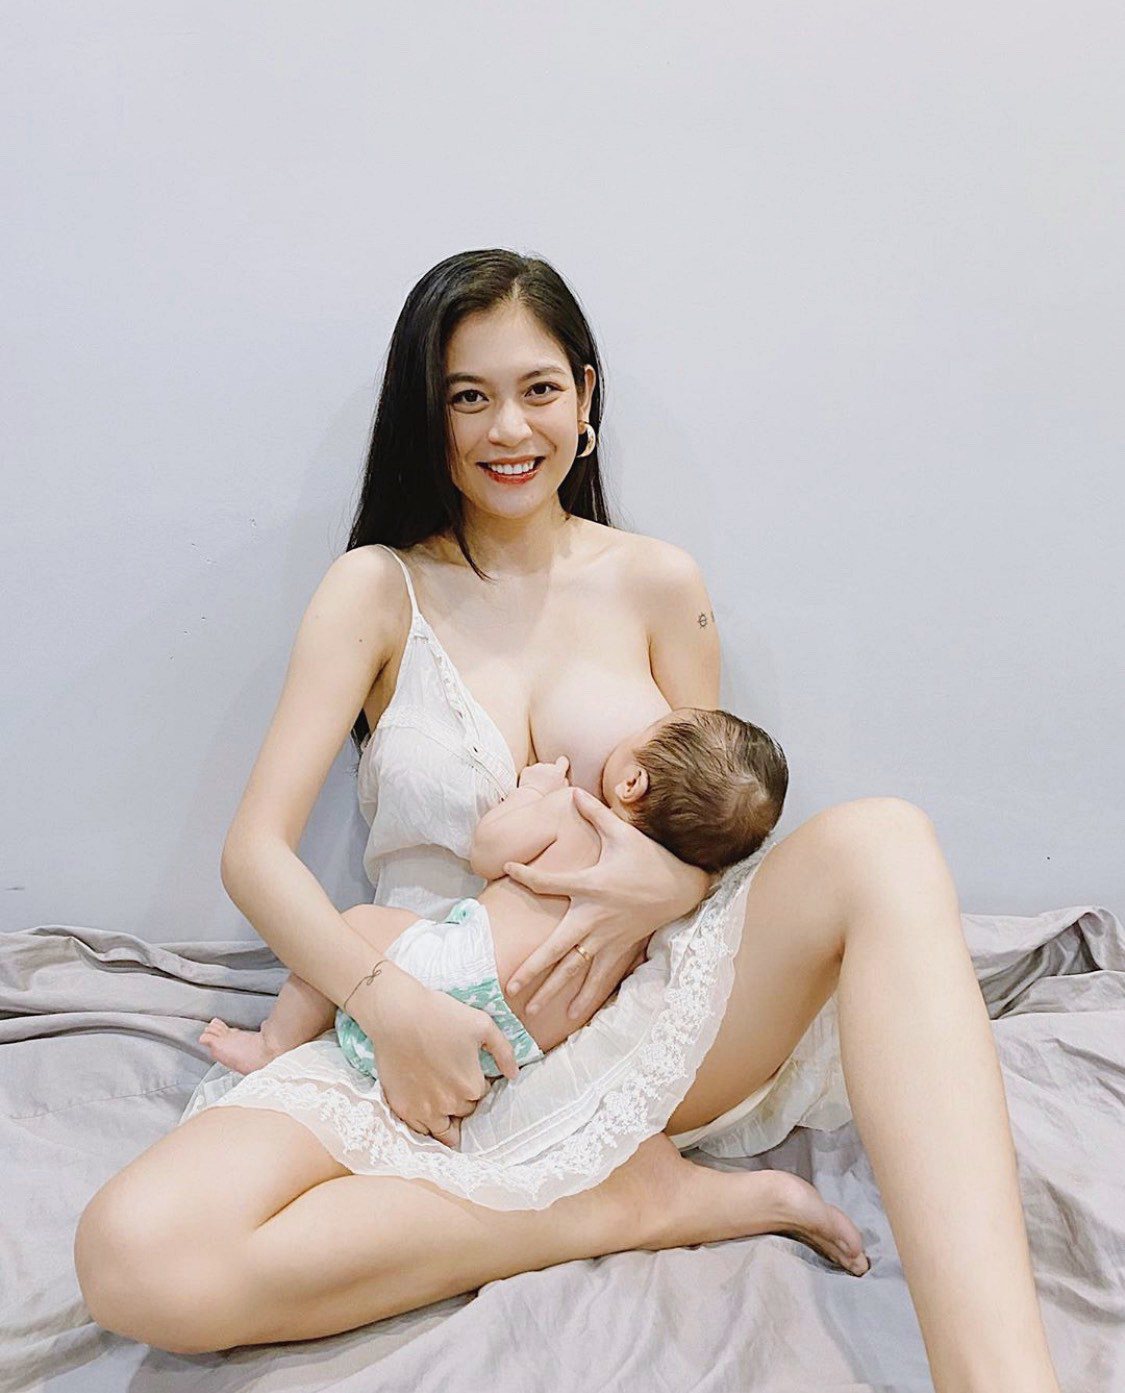 Hớ hênh lộ cả bầu ngực nhưng 3 mẹ Việt được khen hết lời vì cho con bú quá đẹp - 4